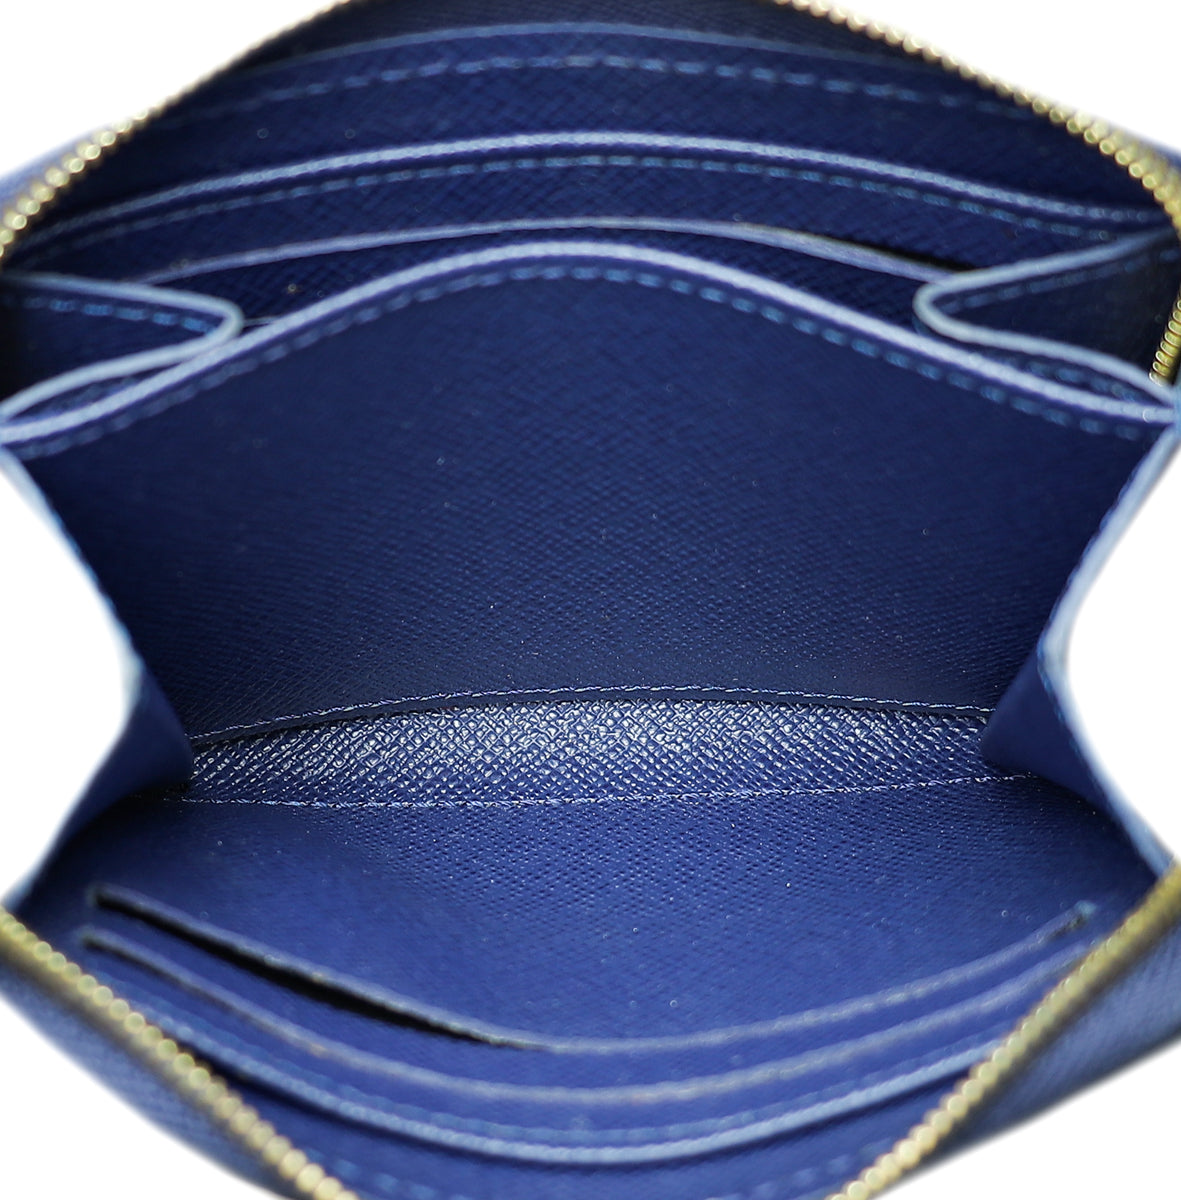 Louis Vuitton Blue Owl Zippy Coin Wallet